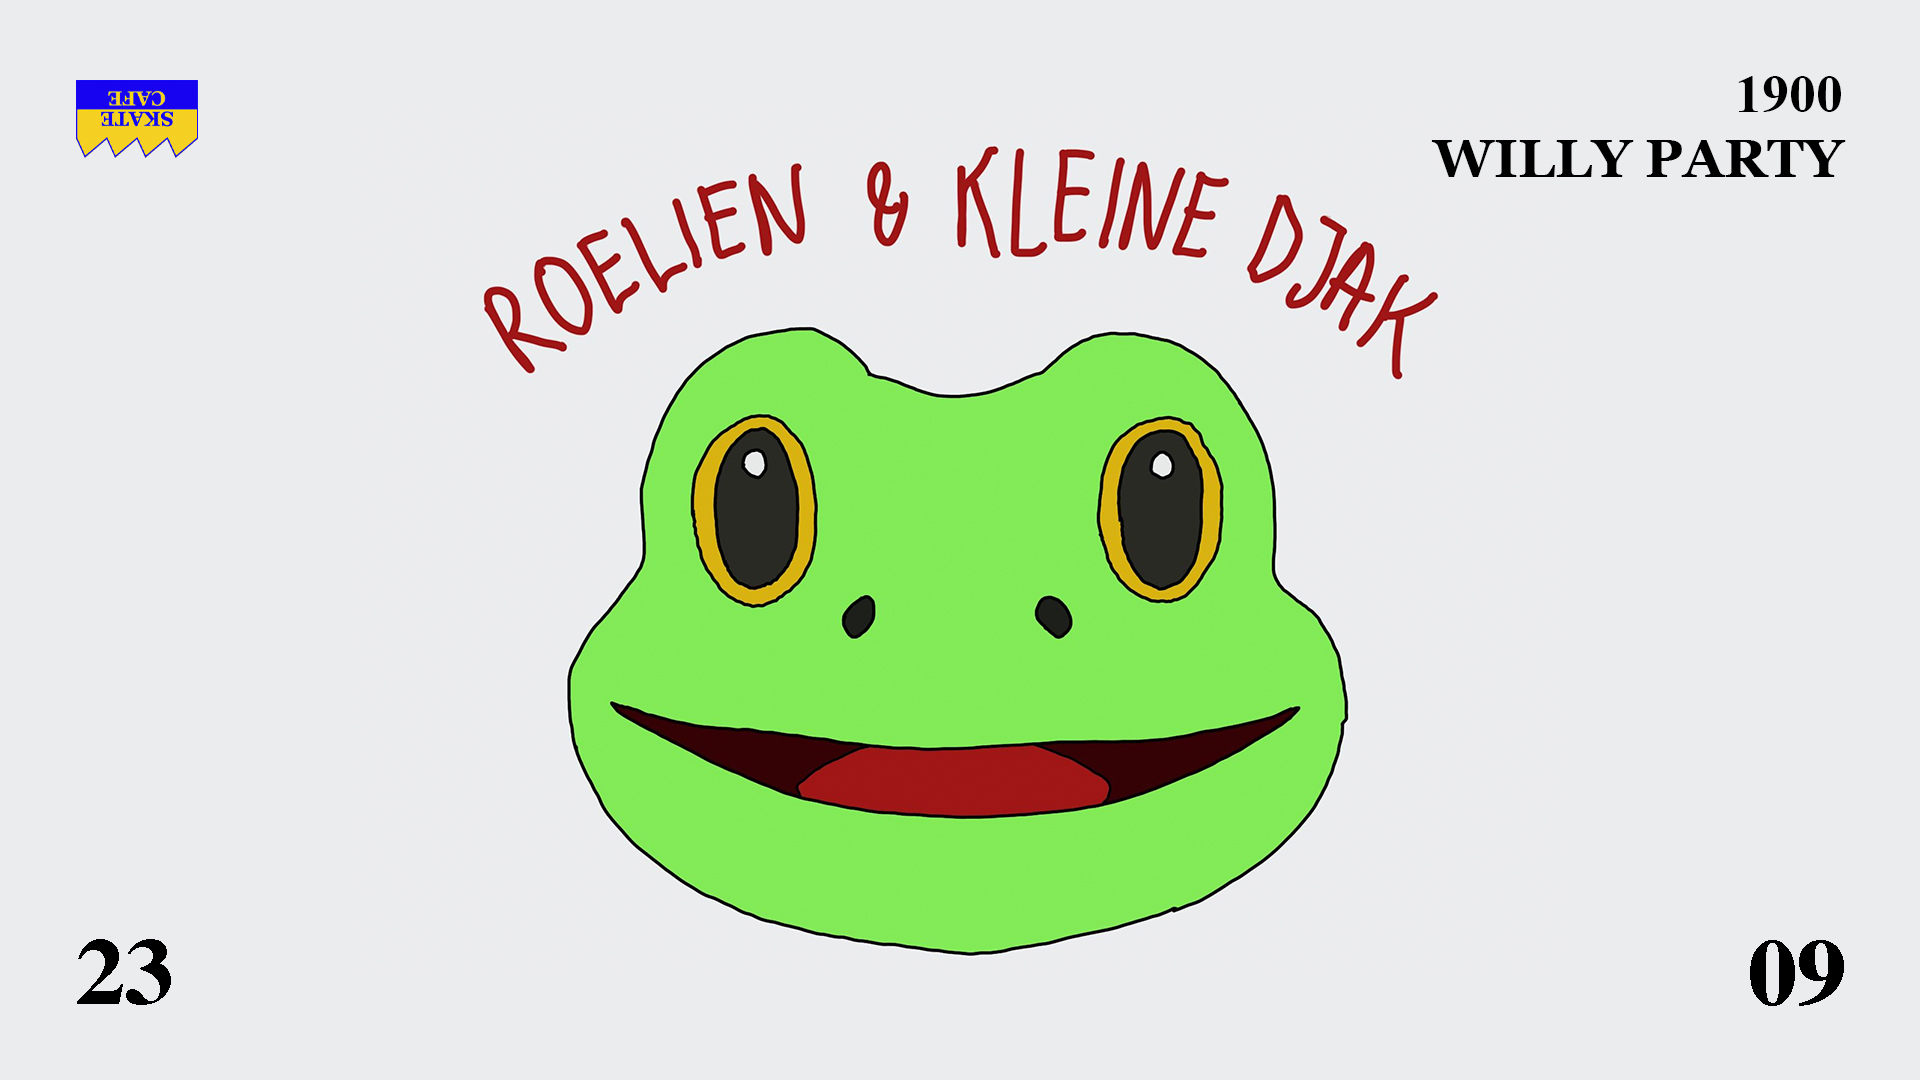 Roelien & Kleine Djak header